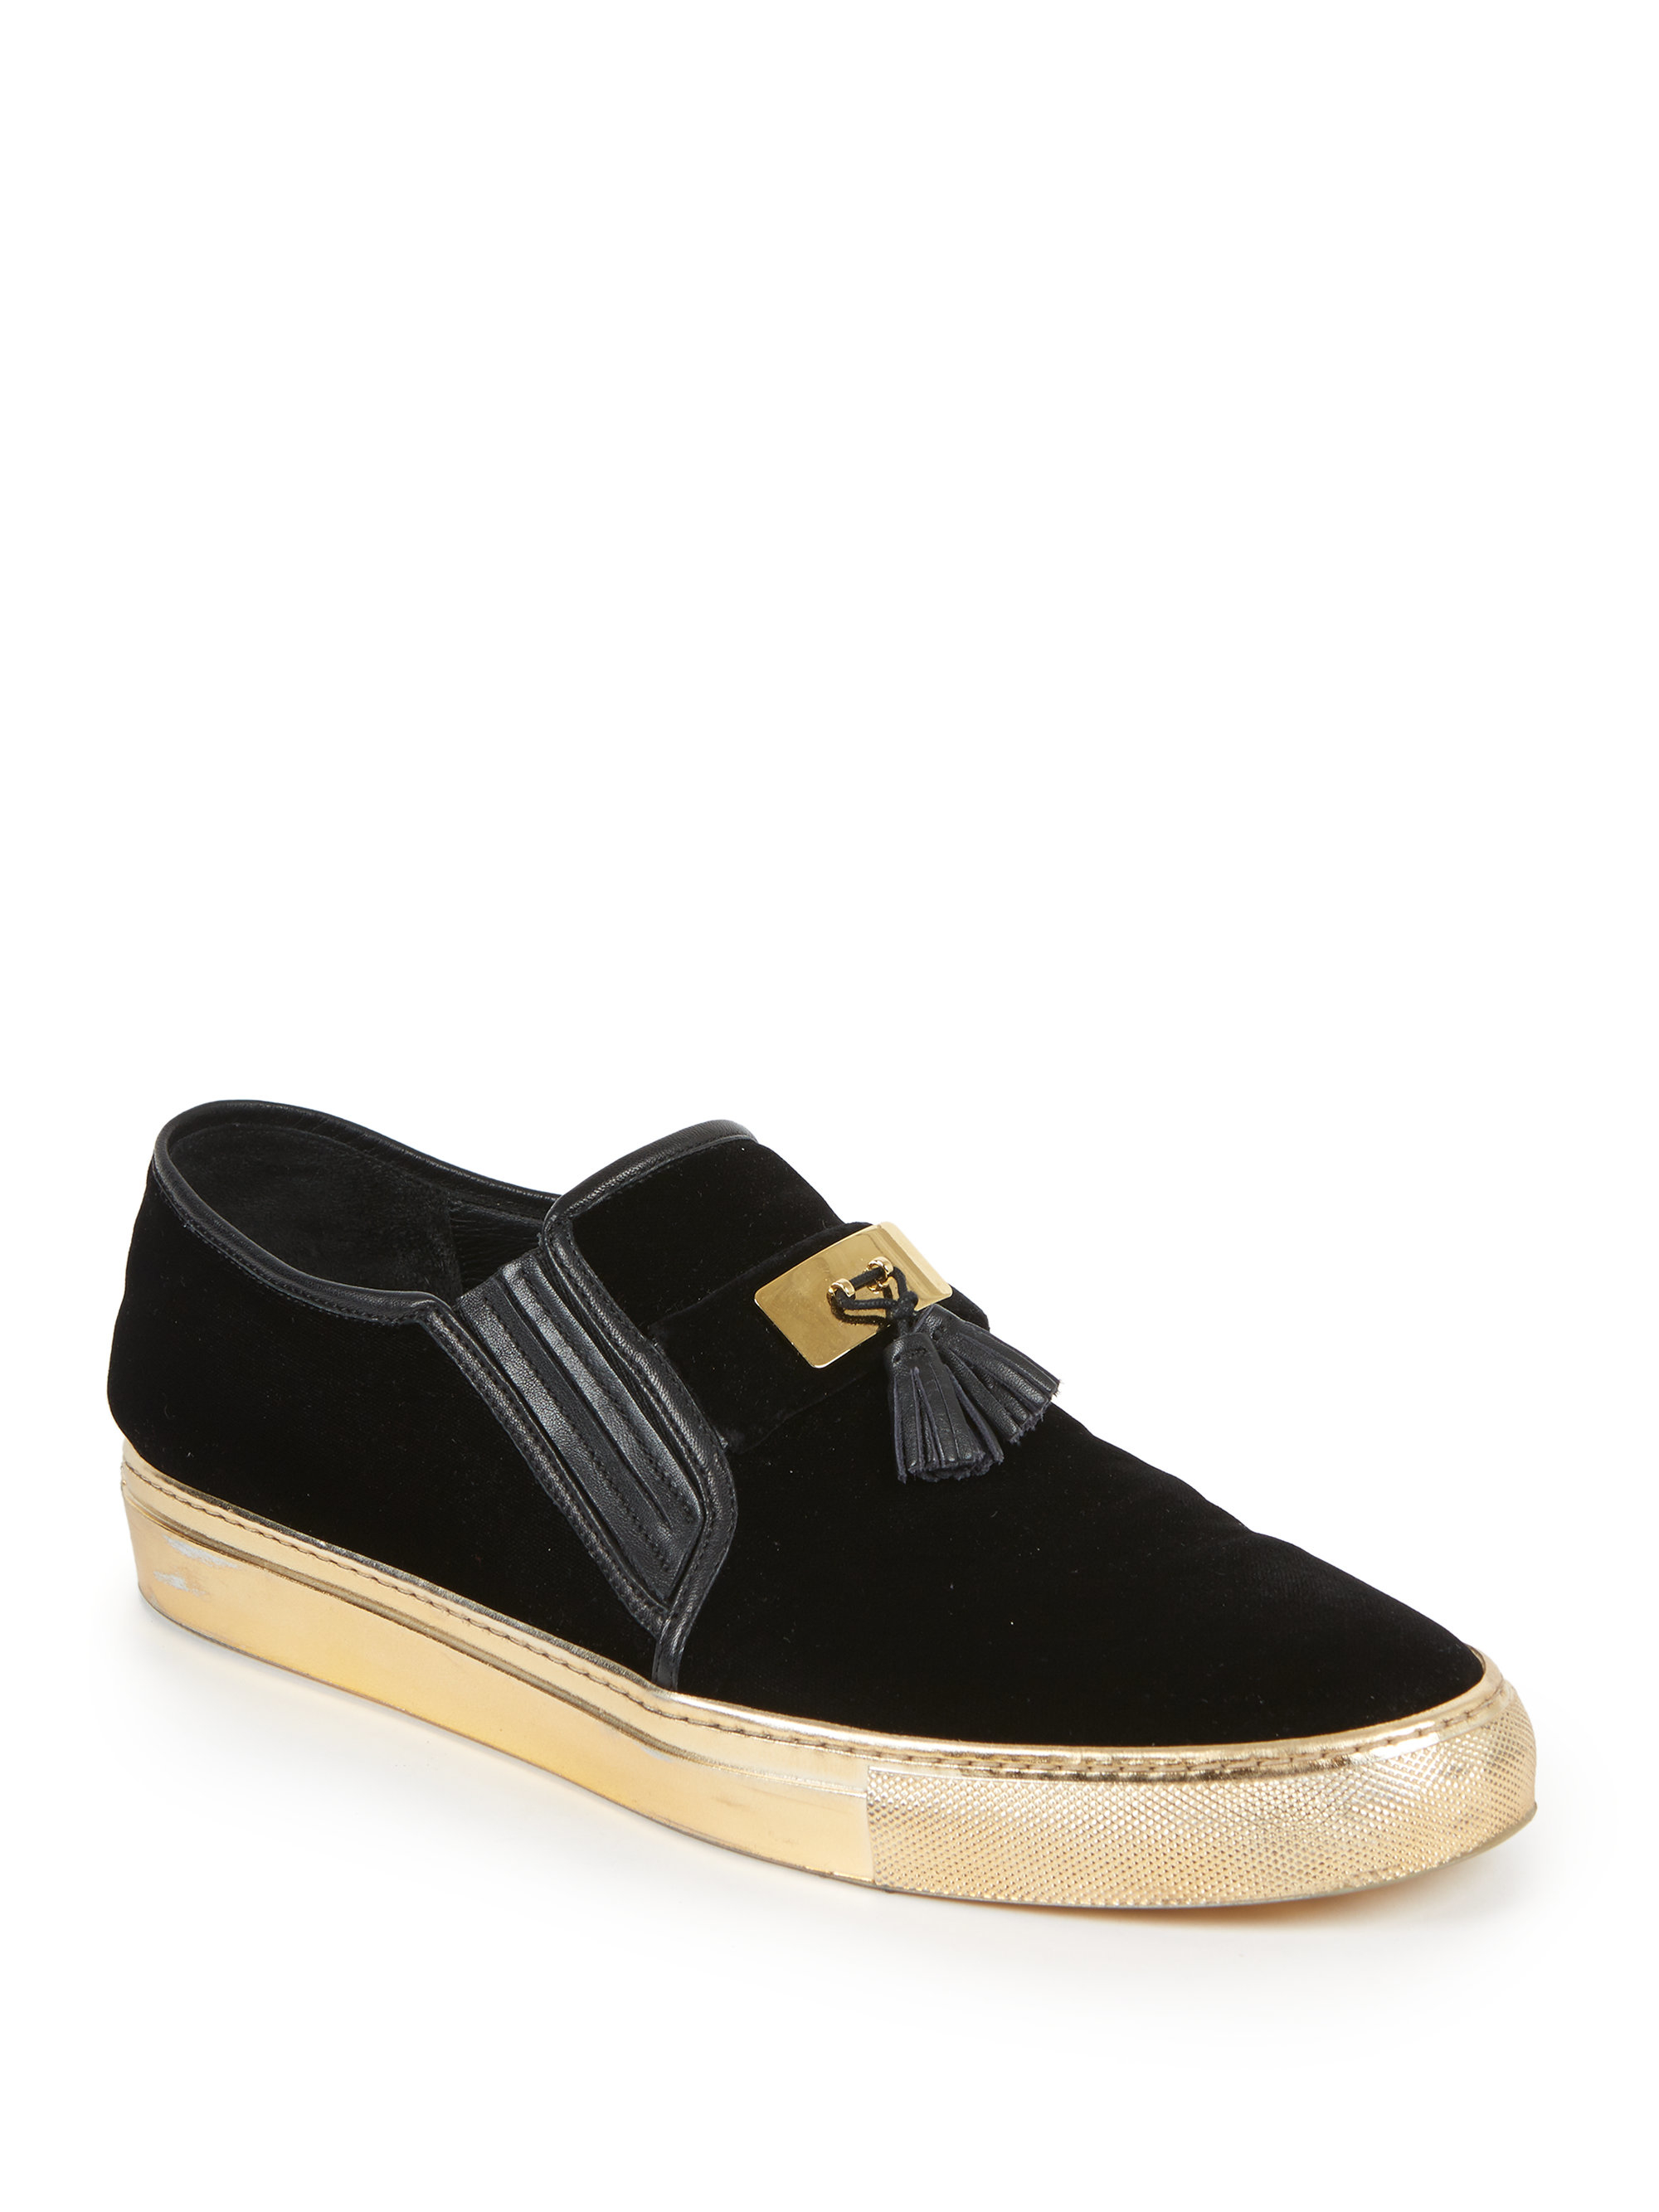 Balmain Tasseled Velvet Slip-on Sneakers in (Black) Men - Lyst